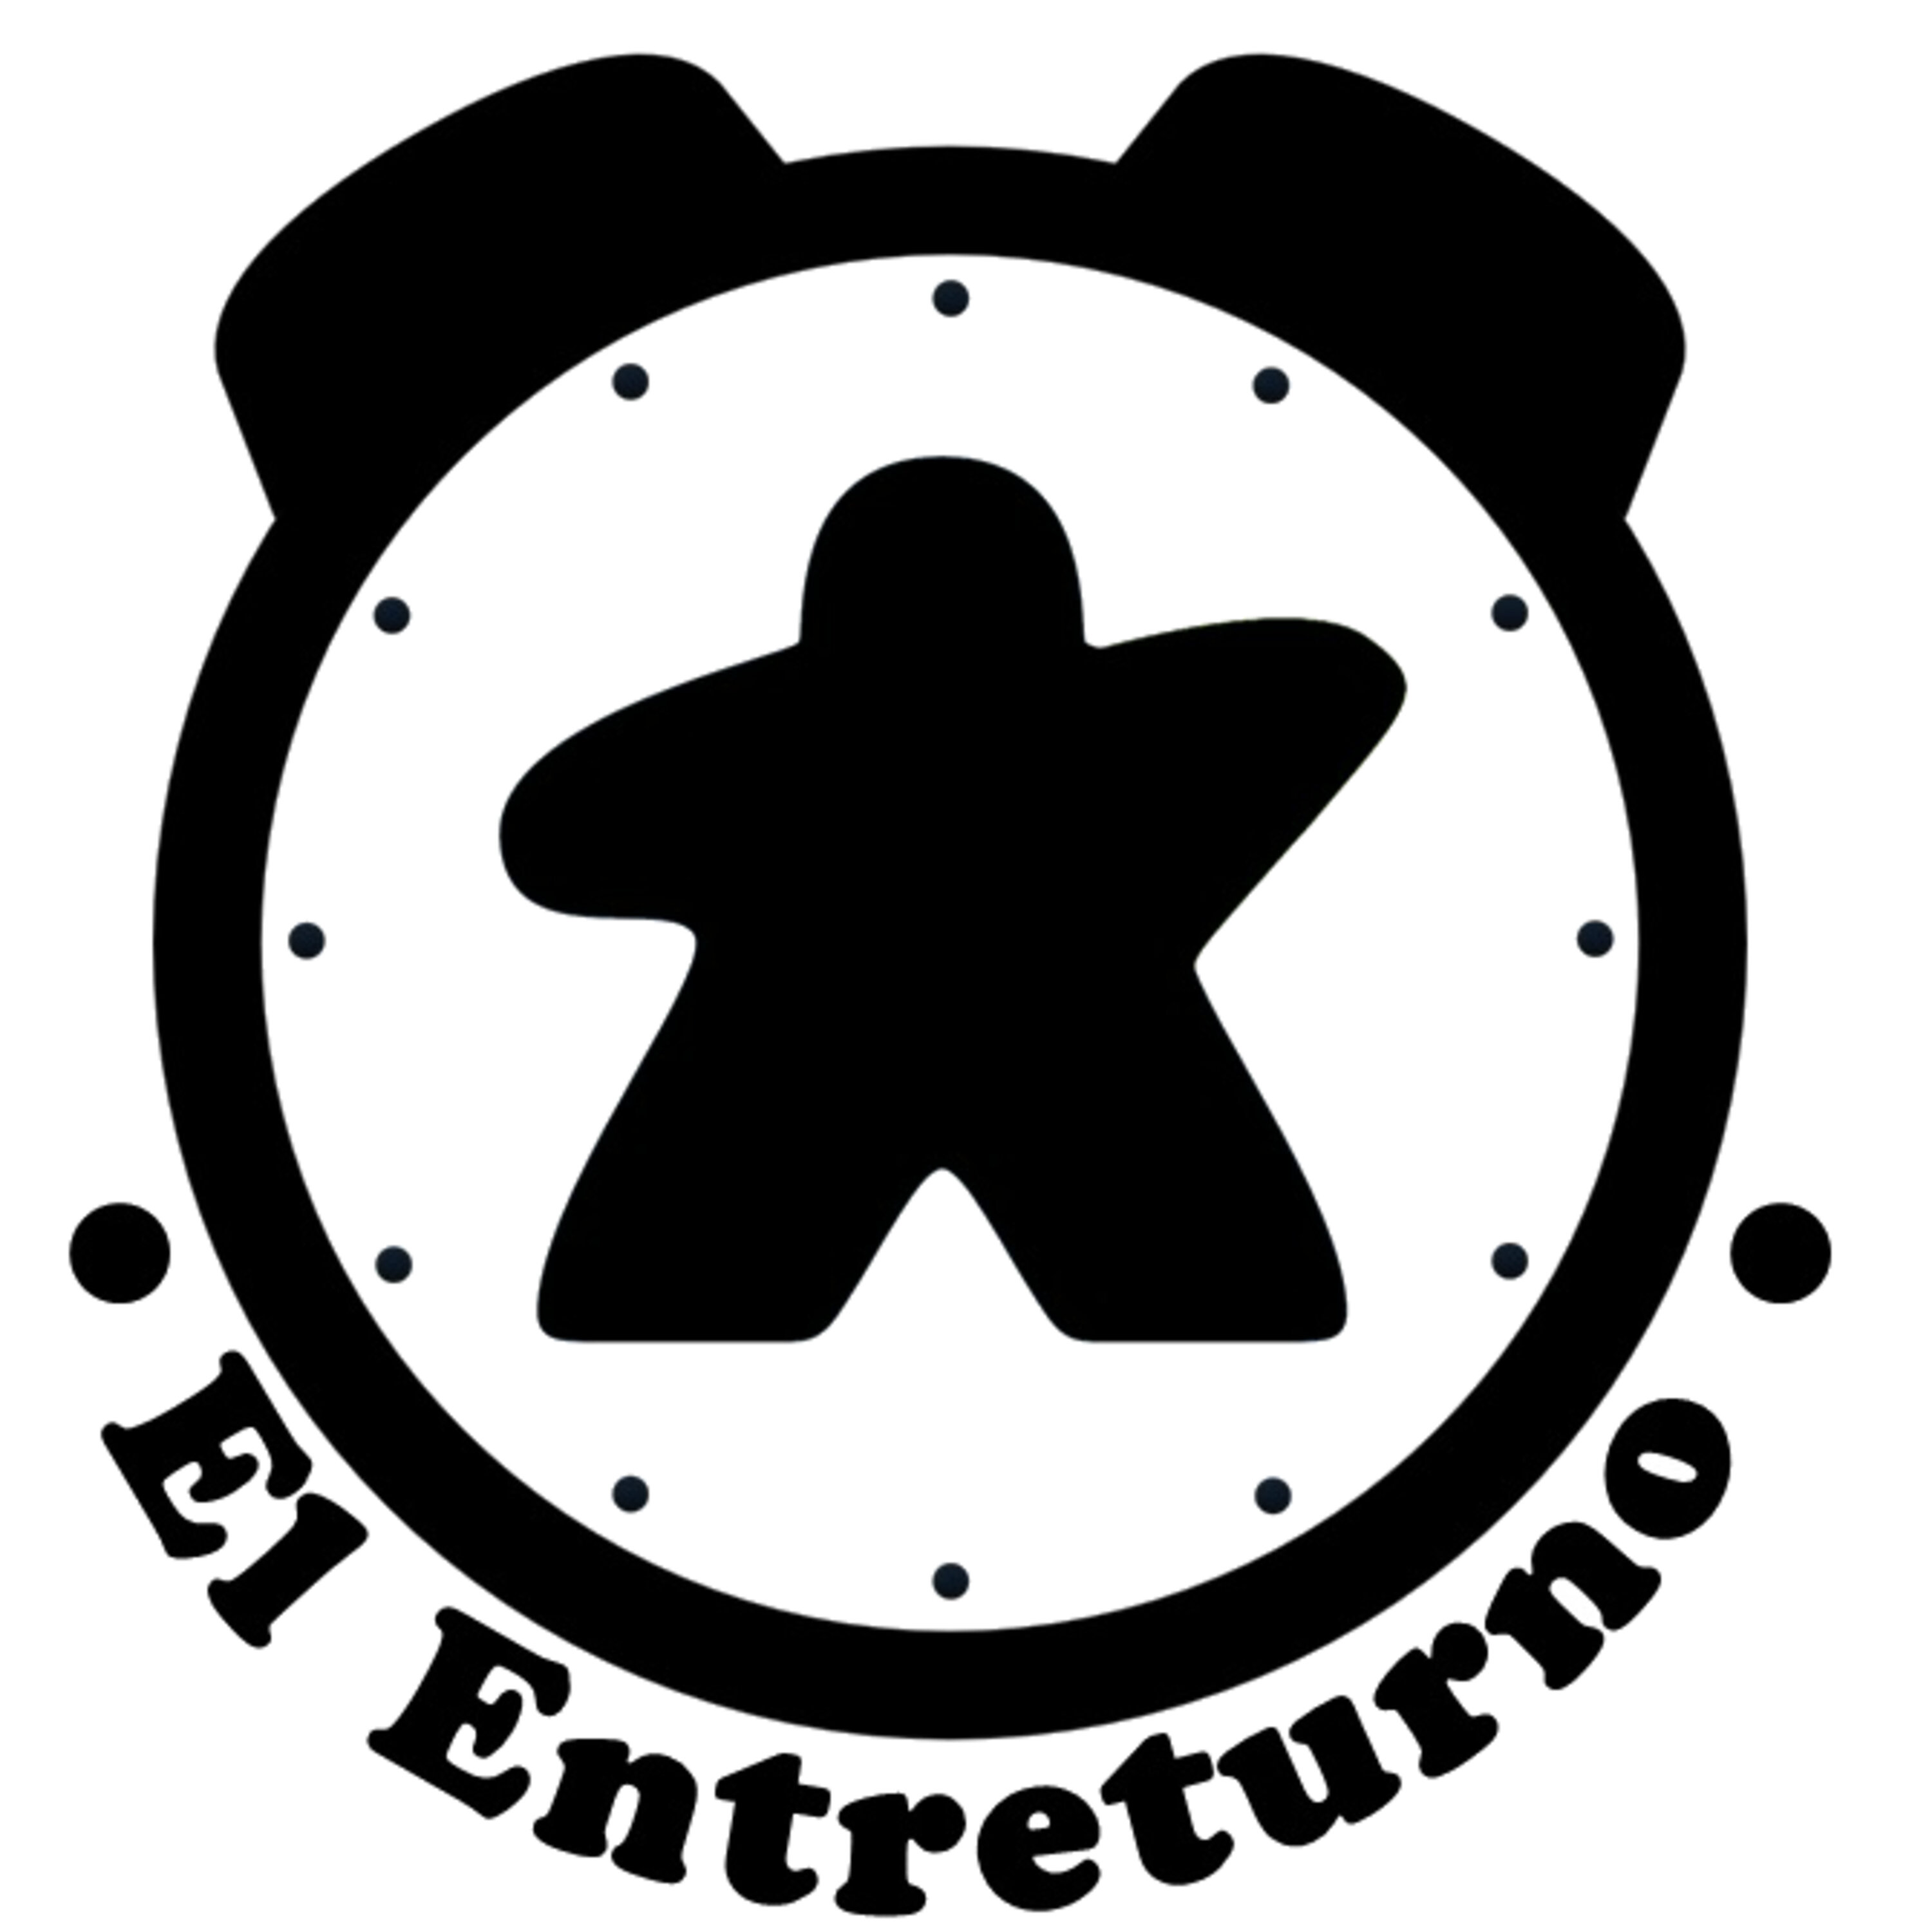 131 El Entreturno - Big house party